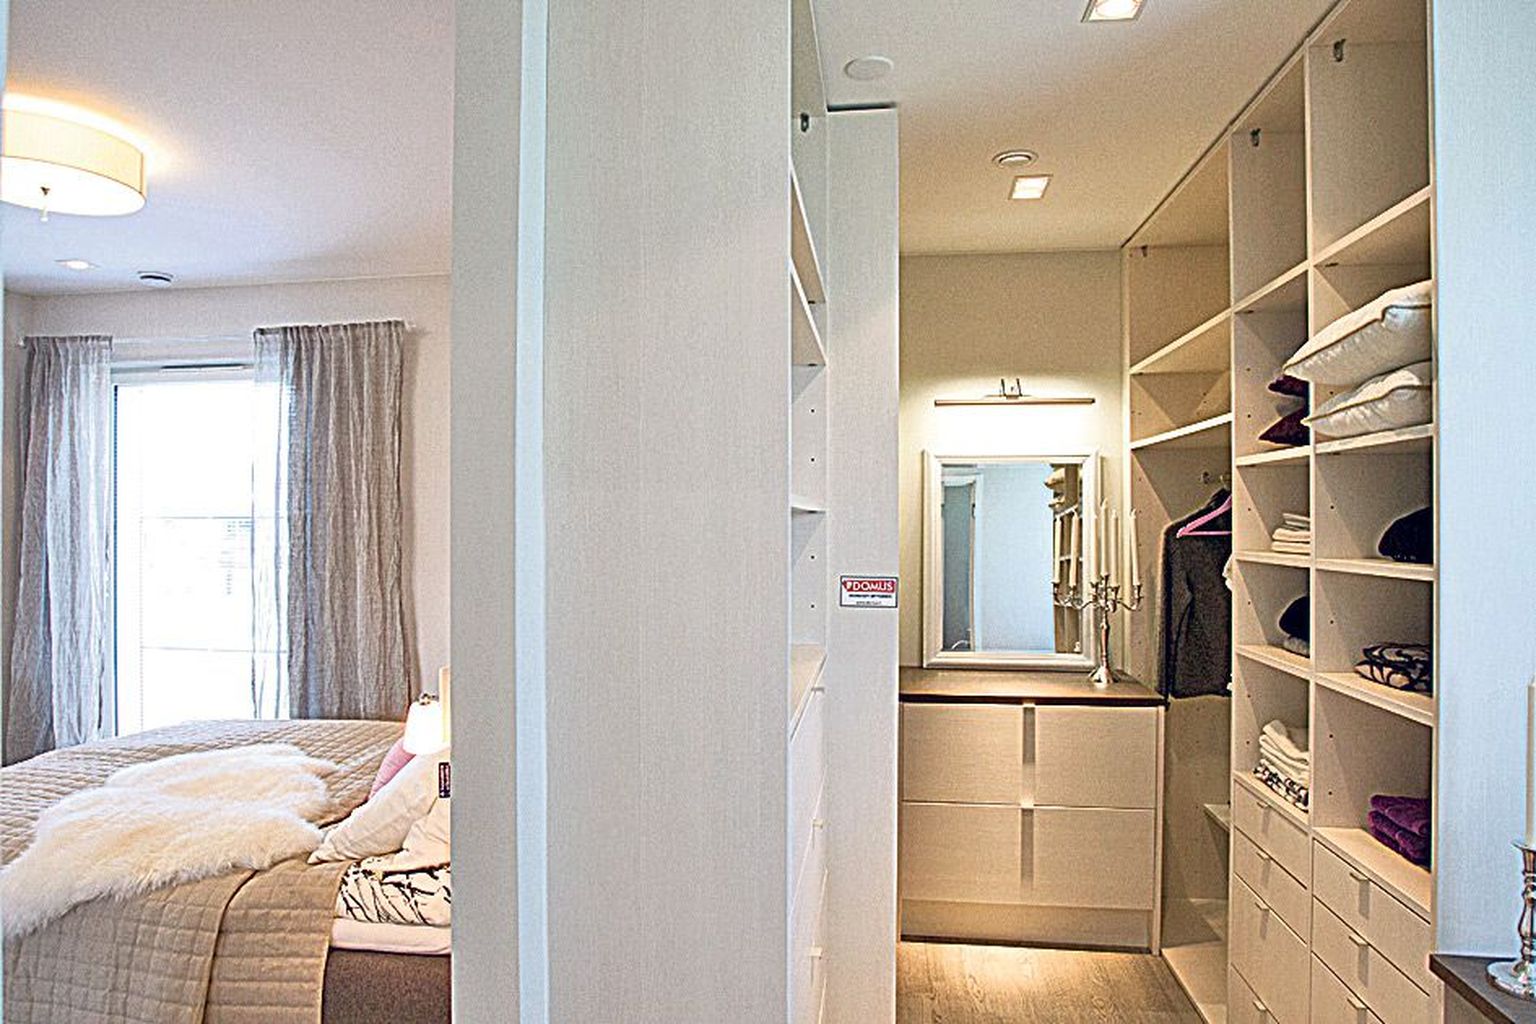 Hea lahendus: magamistoast on eraldatud mahukas garderoob.